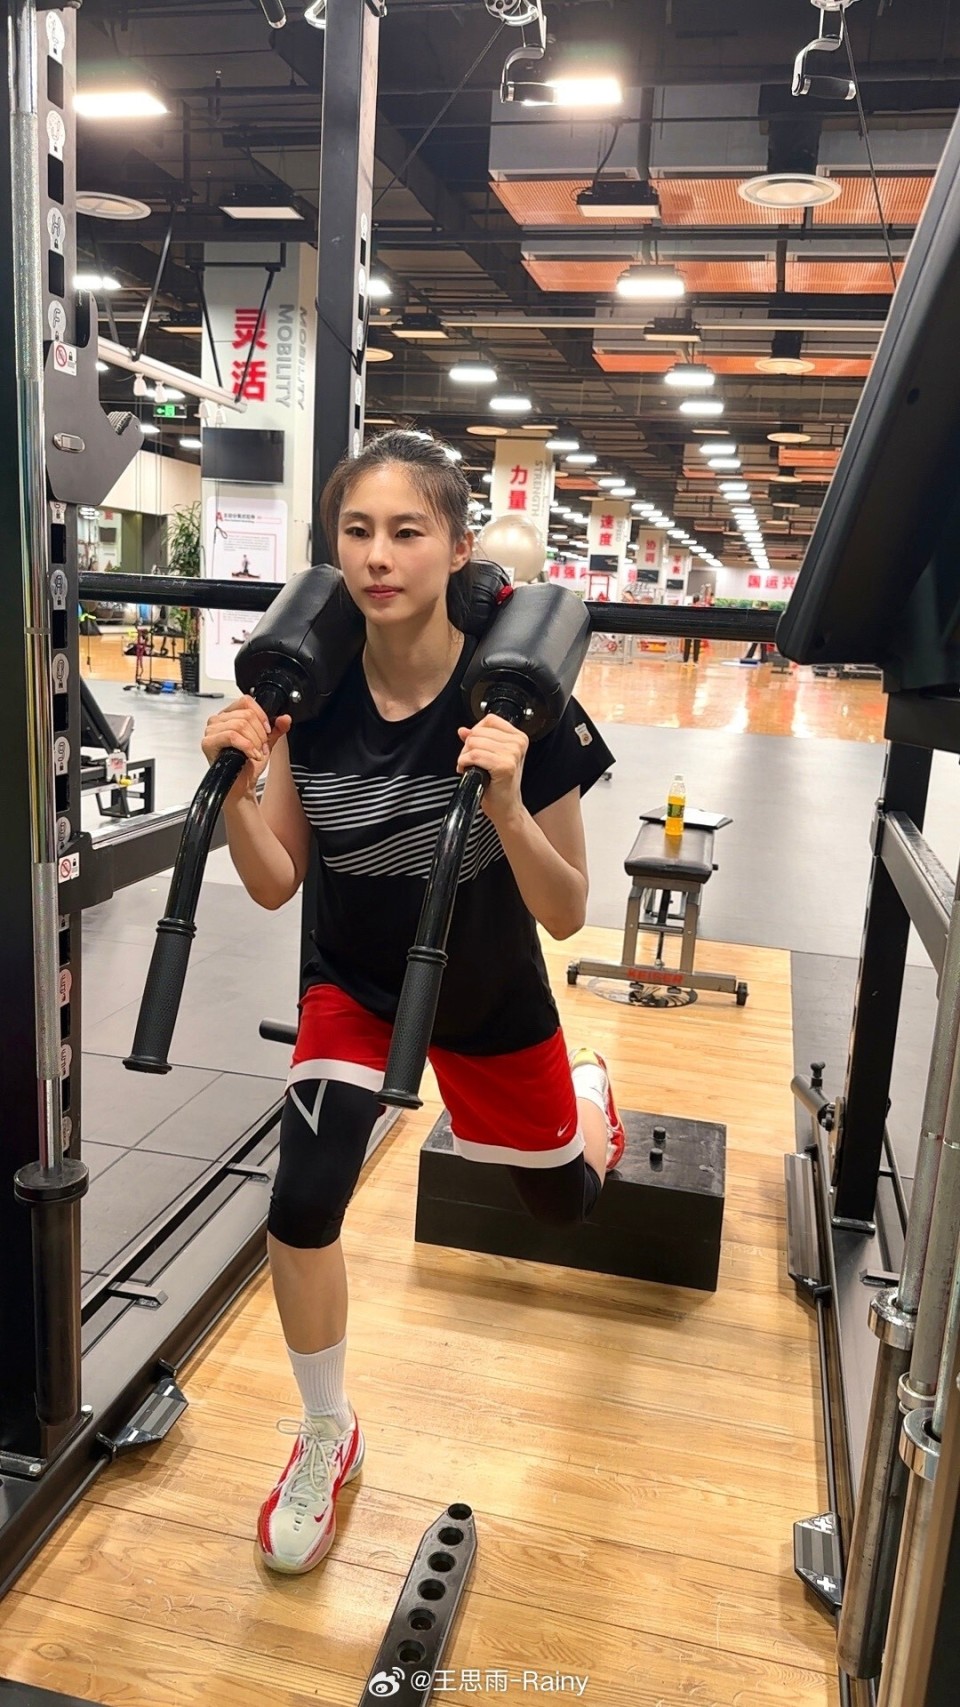 中国女篮后卫王思雨更新训练动态:最近有在很努力训练